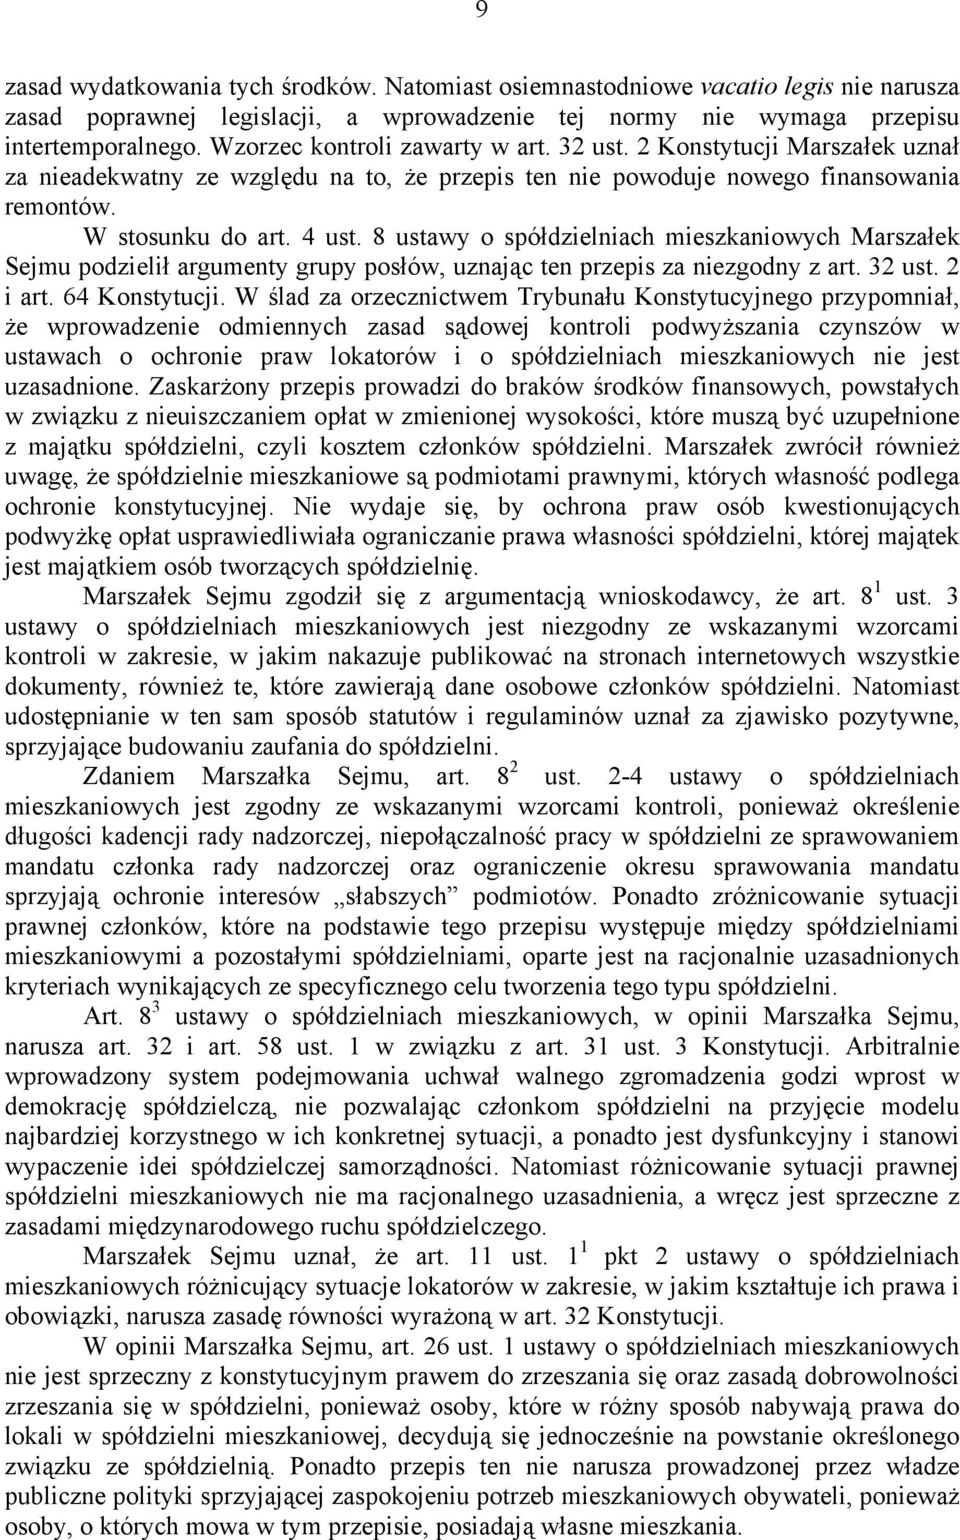 8 ustawy o spółdzielniach mieszkaniowych Marszałek Sejmu podzielił argumenty grupy posłów, uznając ten przepis za niezgodny z art. 32 ust. 2 i art. 64 Konstytucji.